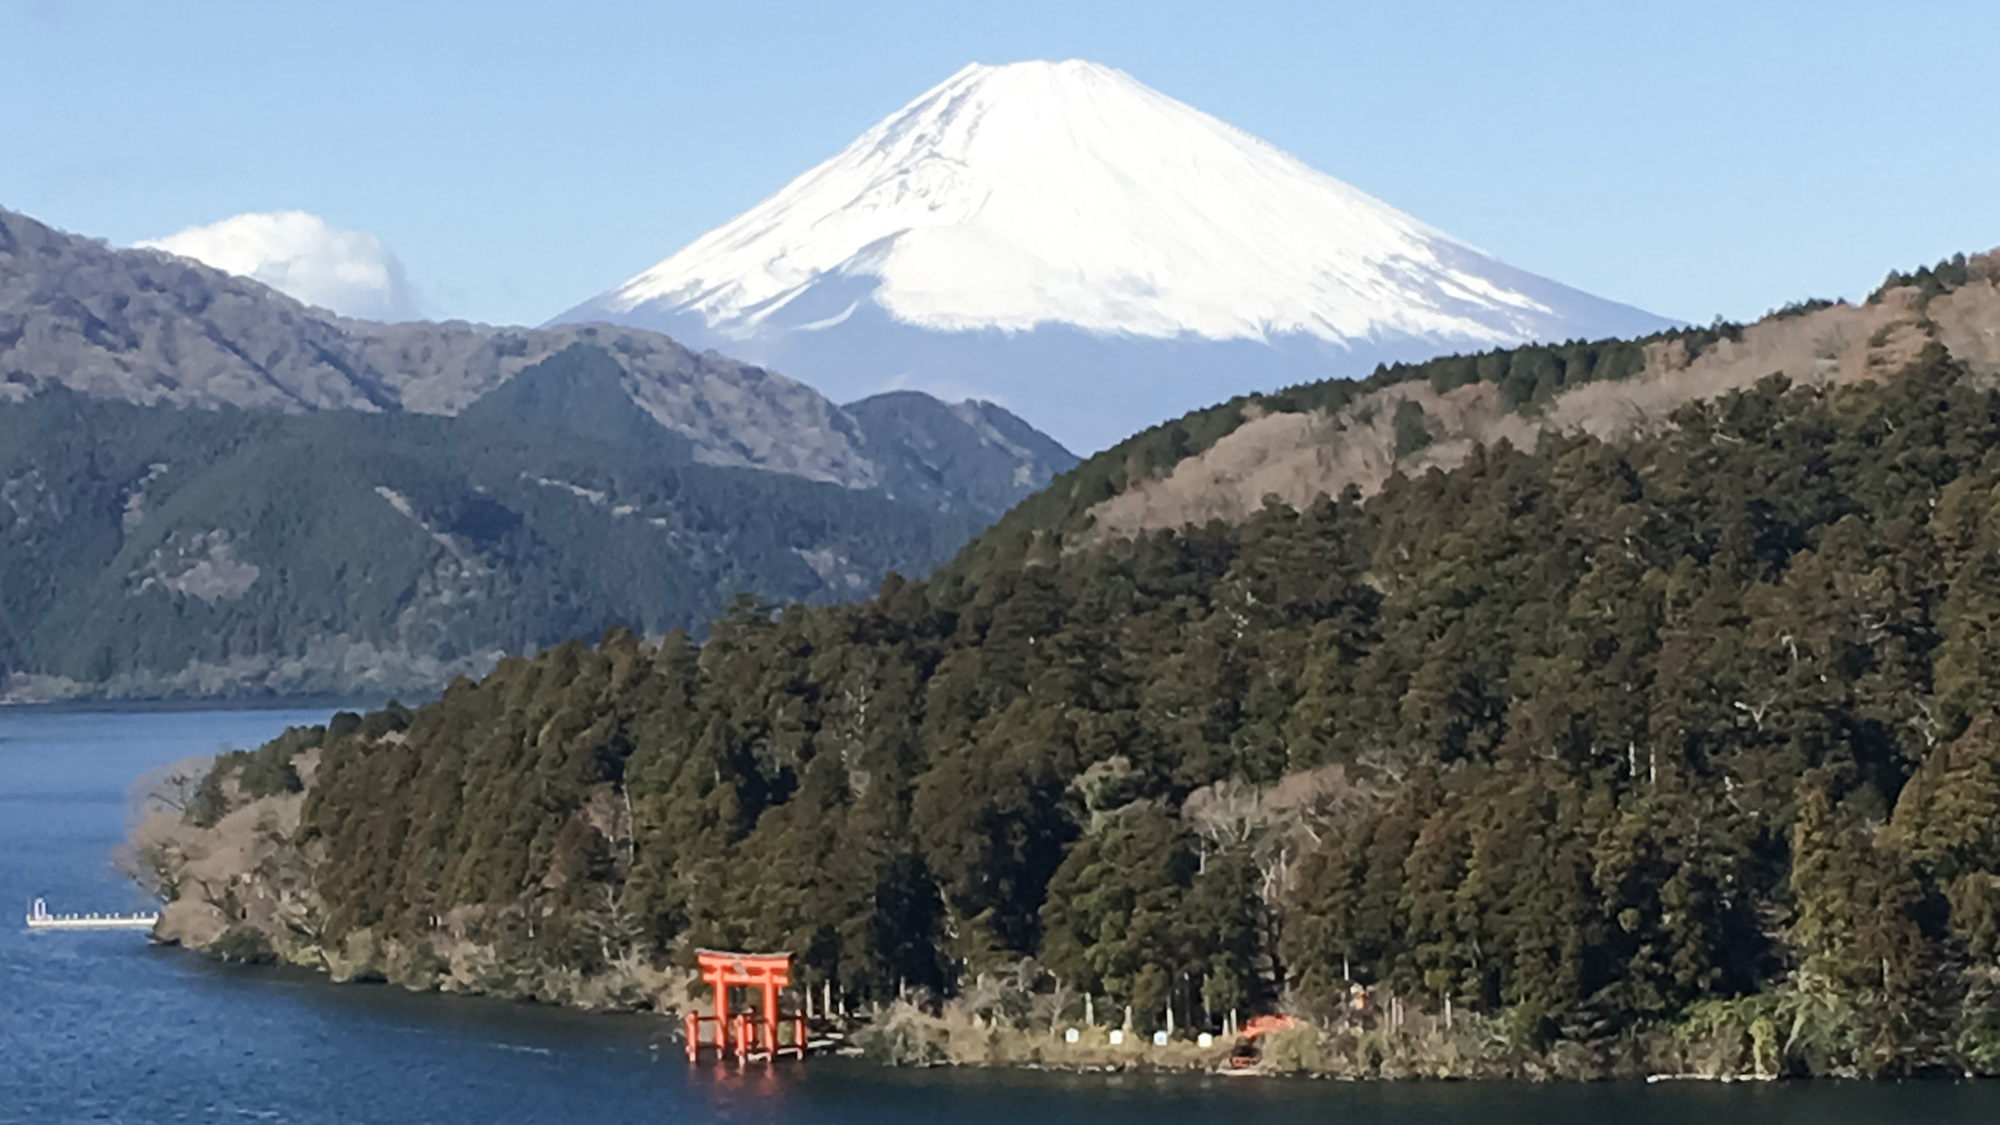 ・【芦ノ湖】芦ノ湖越しのダイナミックな富士山をご覧いただけます